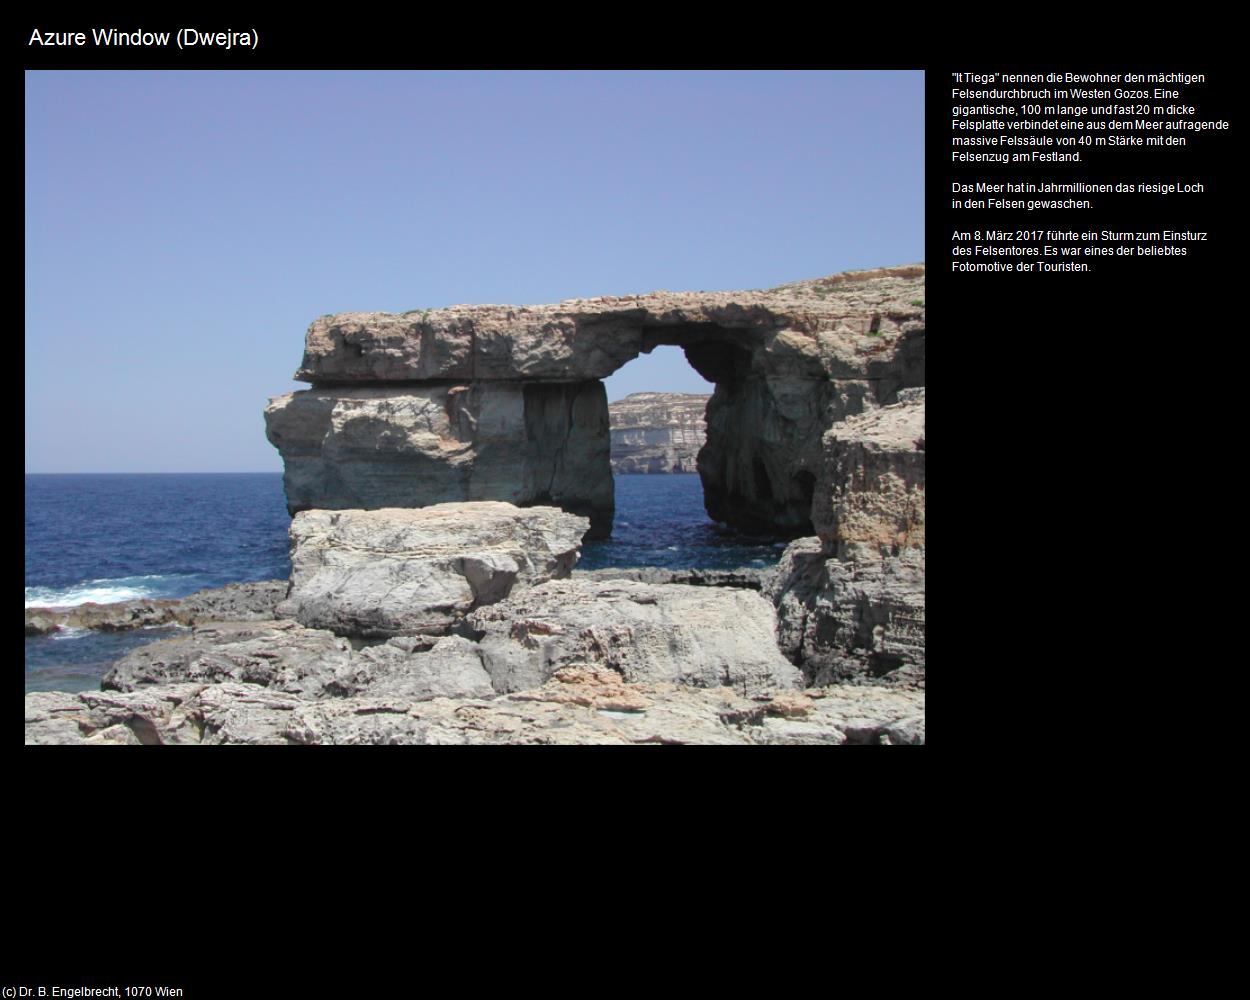 Collapsed Azure Window (Dwerja auf Gozo) in Malta - Perle im Mittelmeer